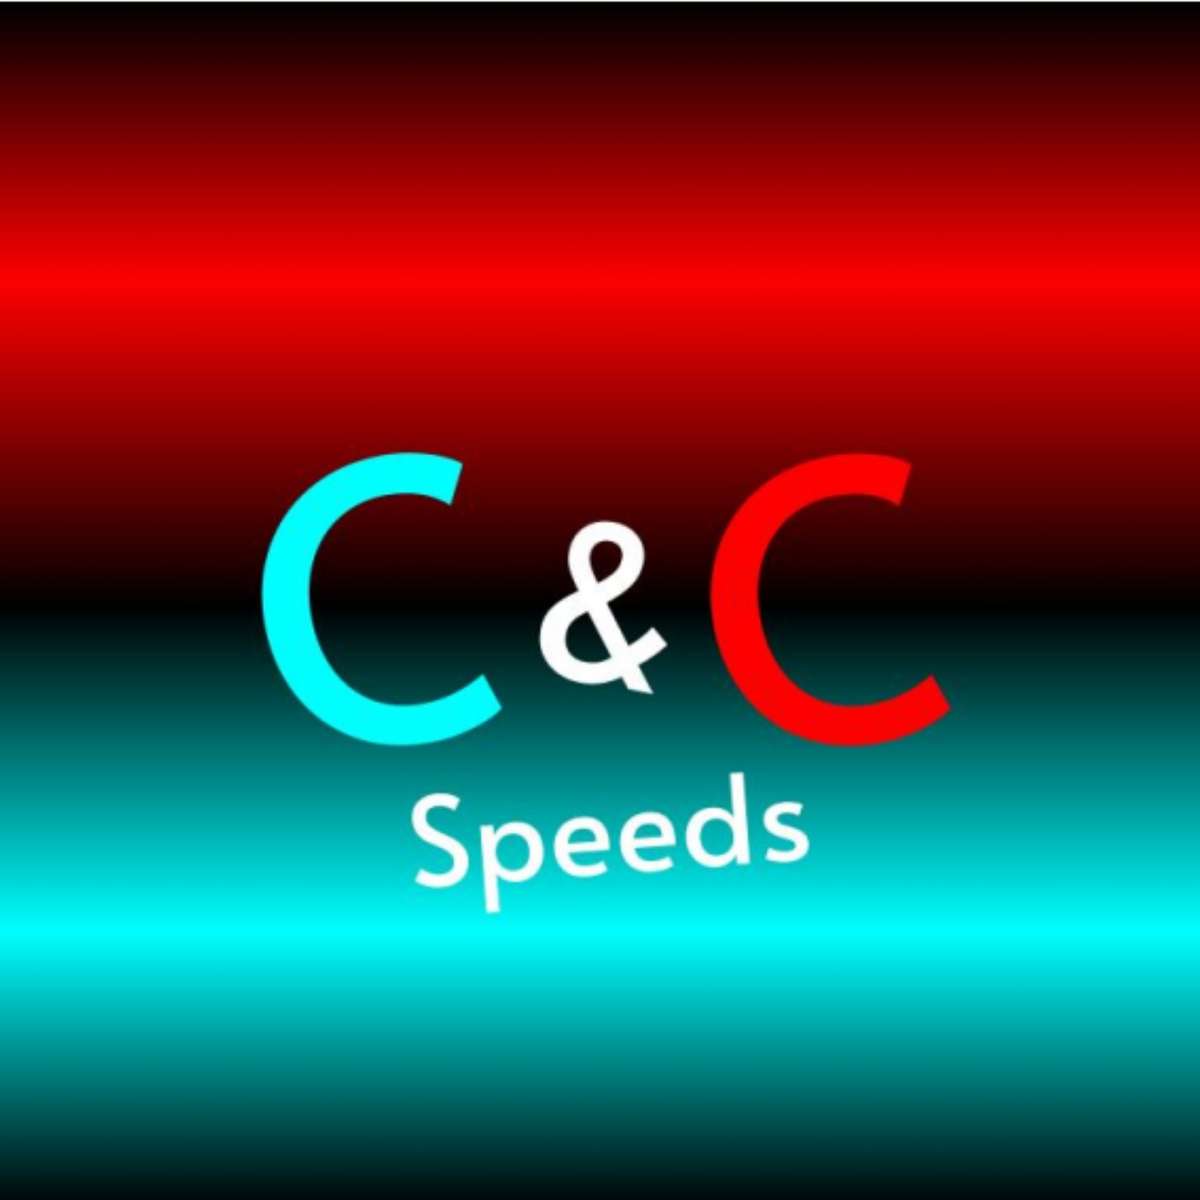 C&C 速度 オンラインパズル